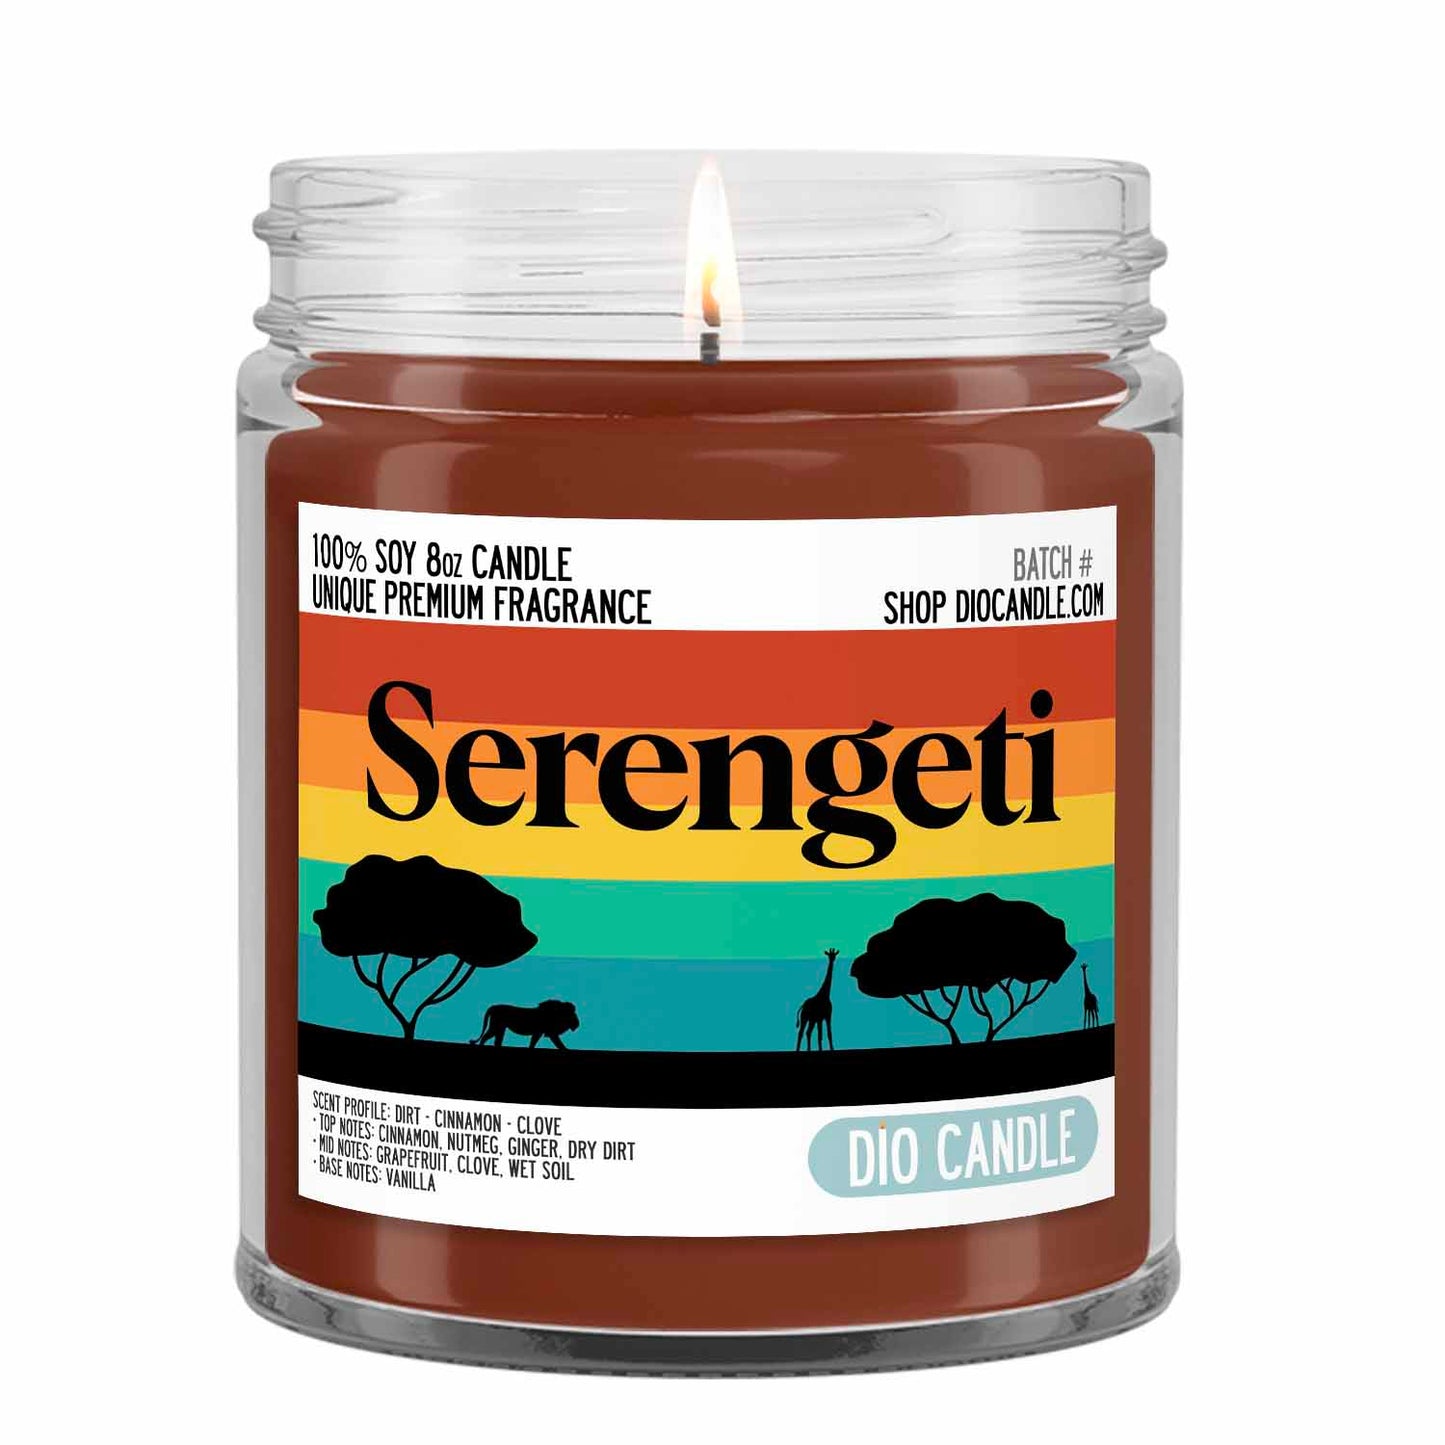 Serengeti Candle